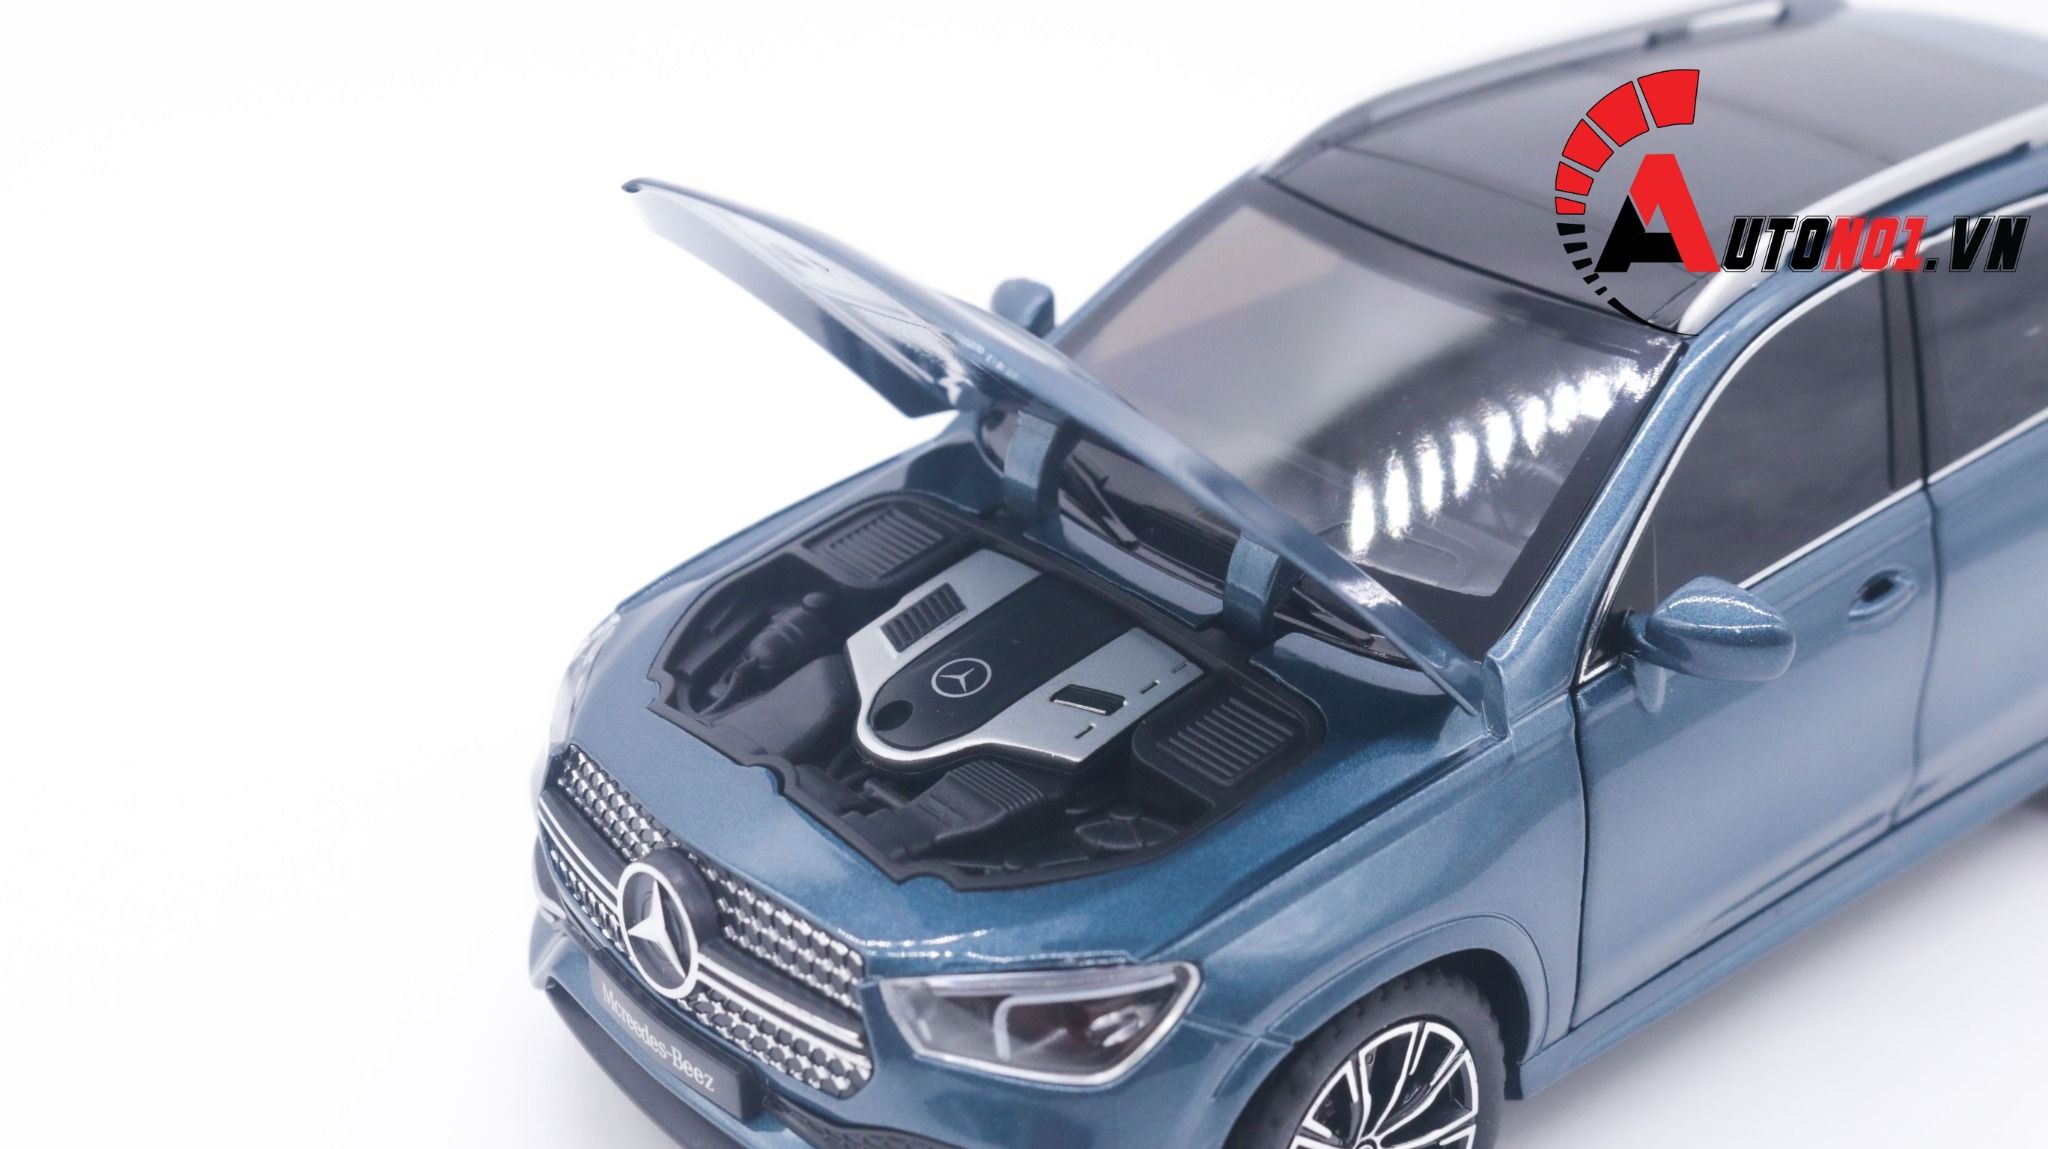  Mô hình xe ô tô SUV Mercedes Benz GLE full open full kính tỉ lệ 1:24 Jinlifiang OT232 